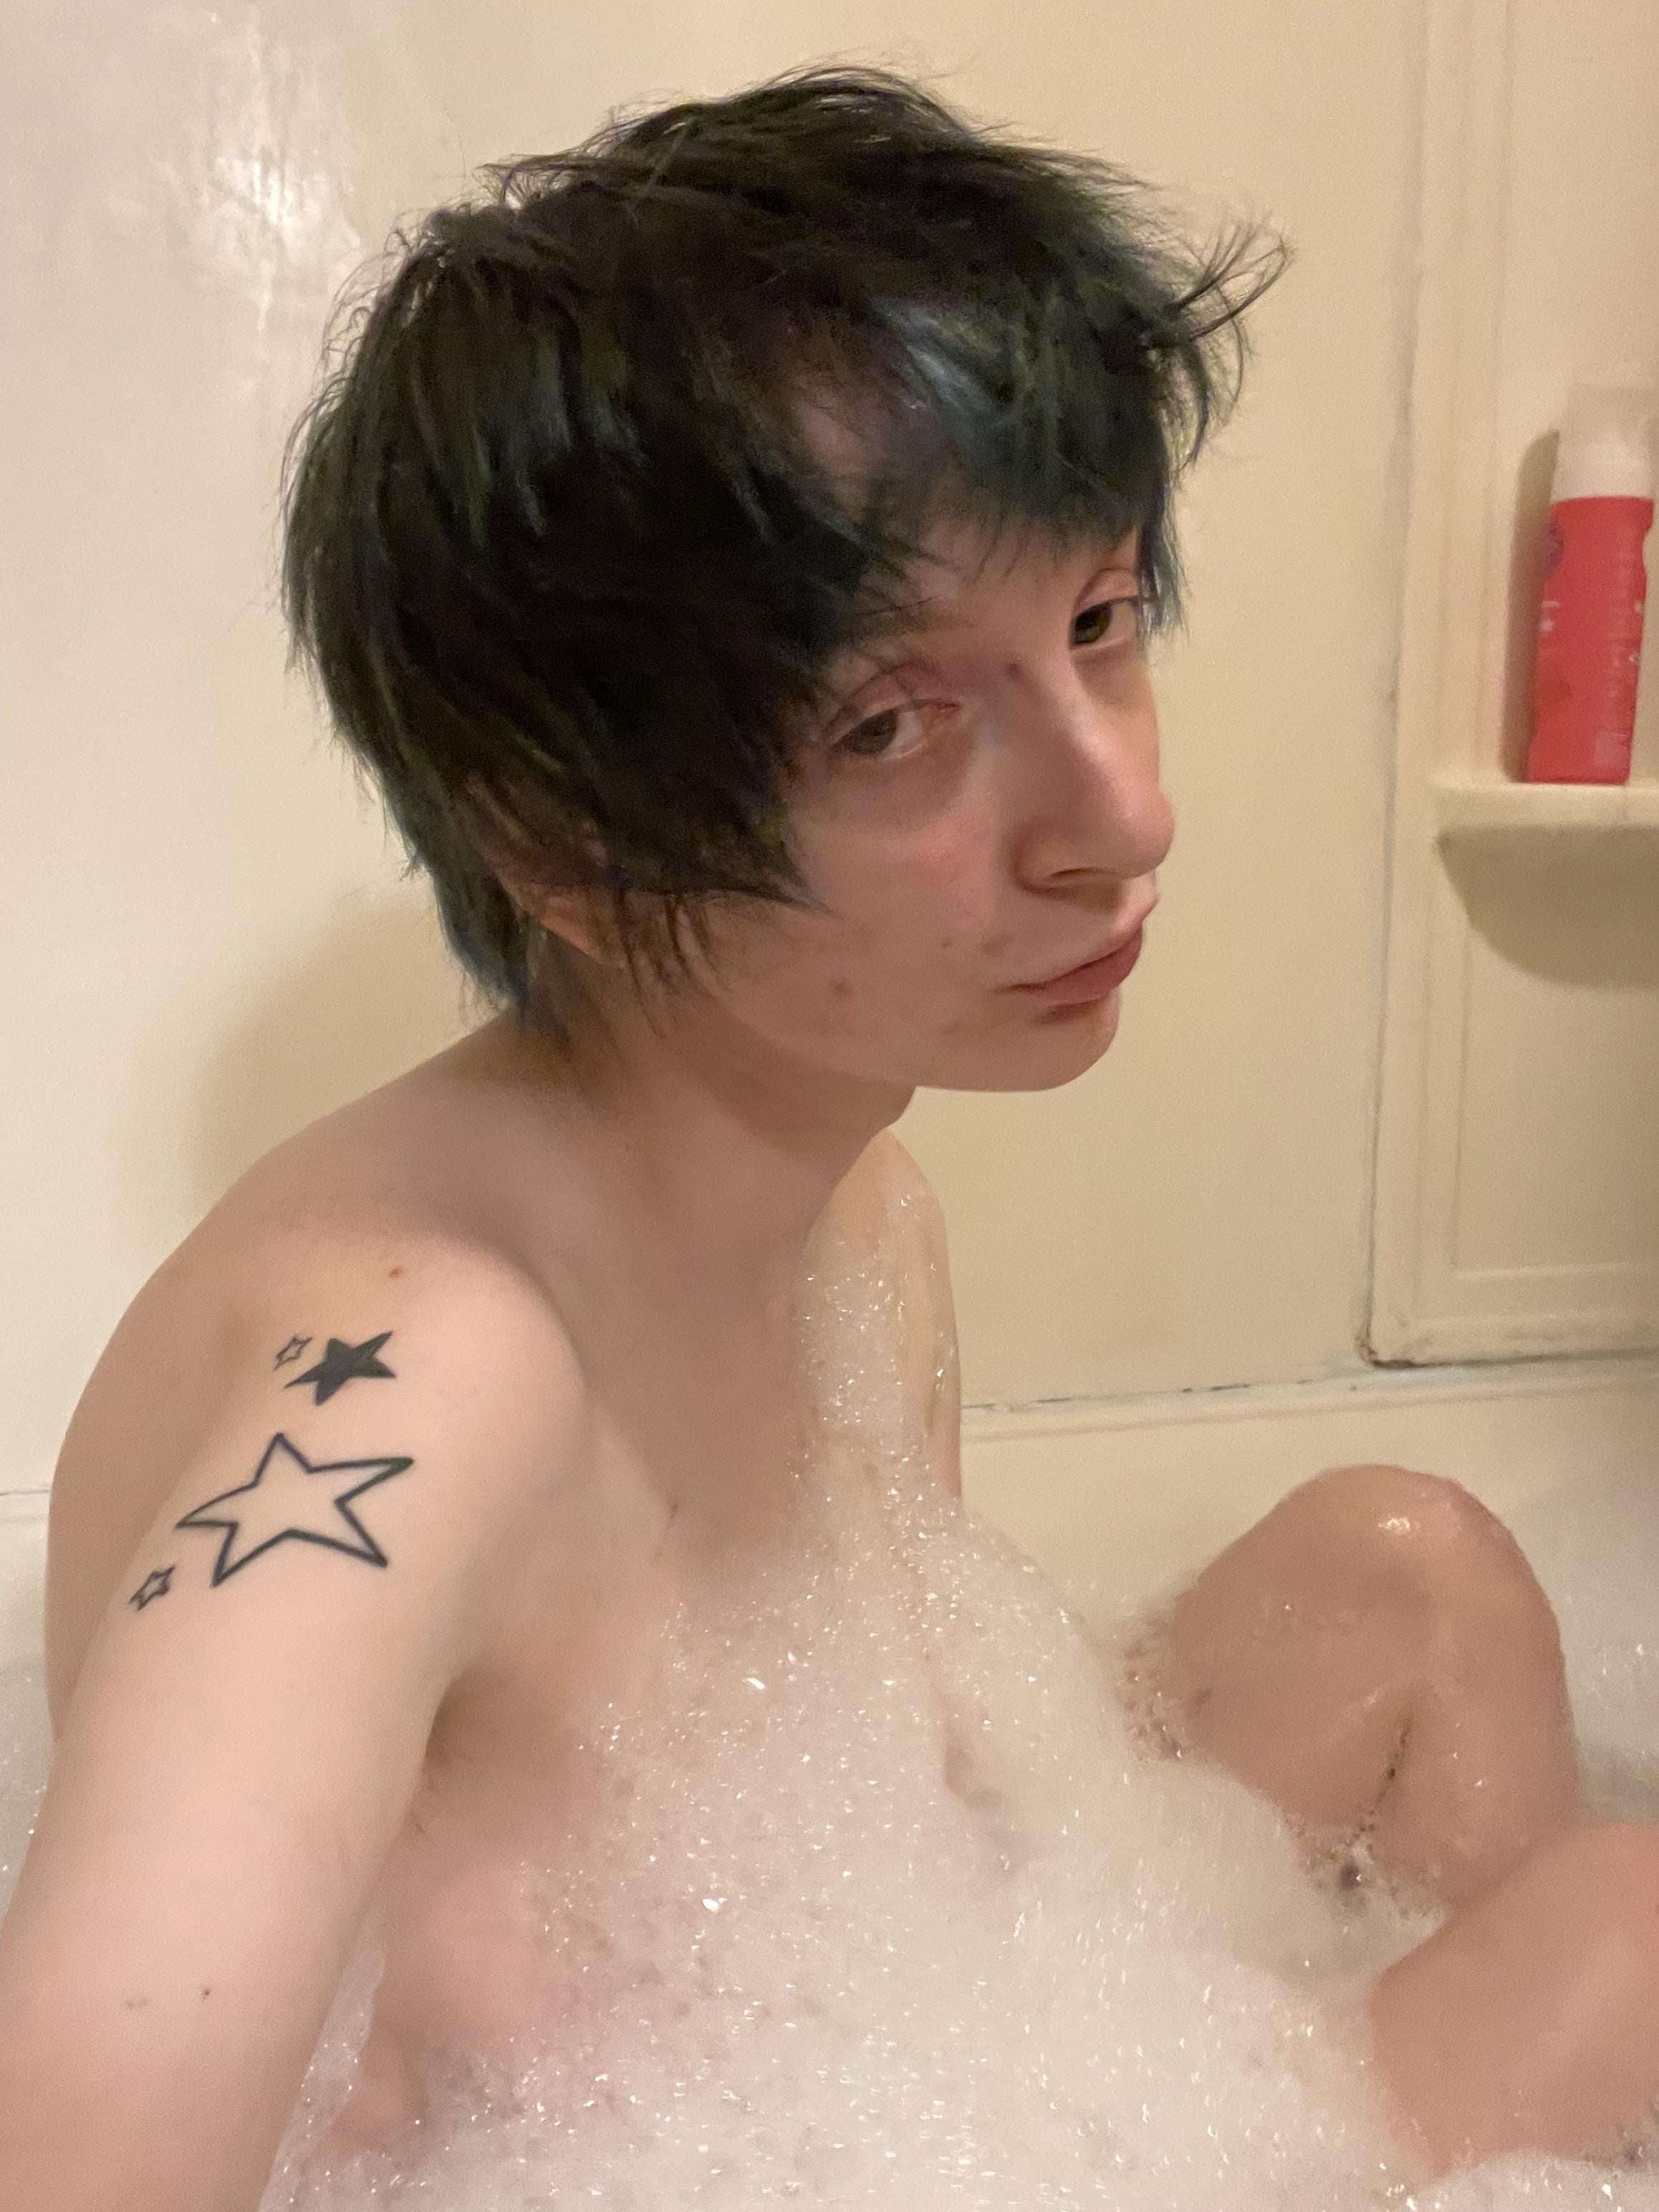 wanna take a bath with me D